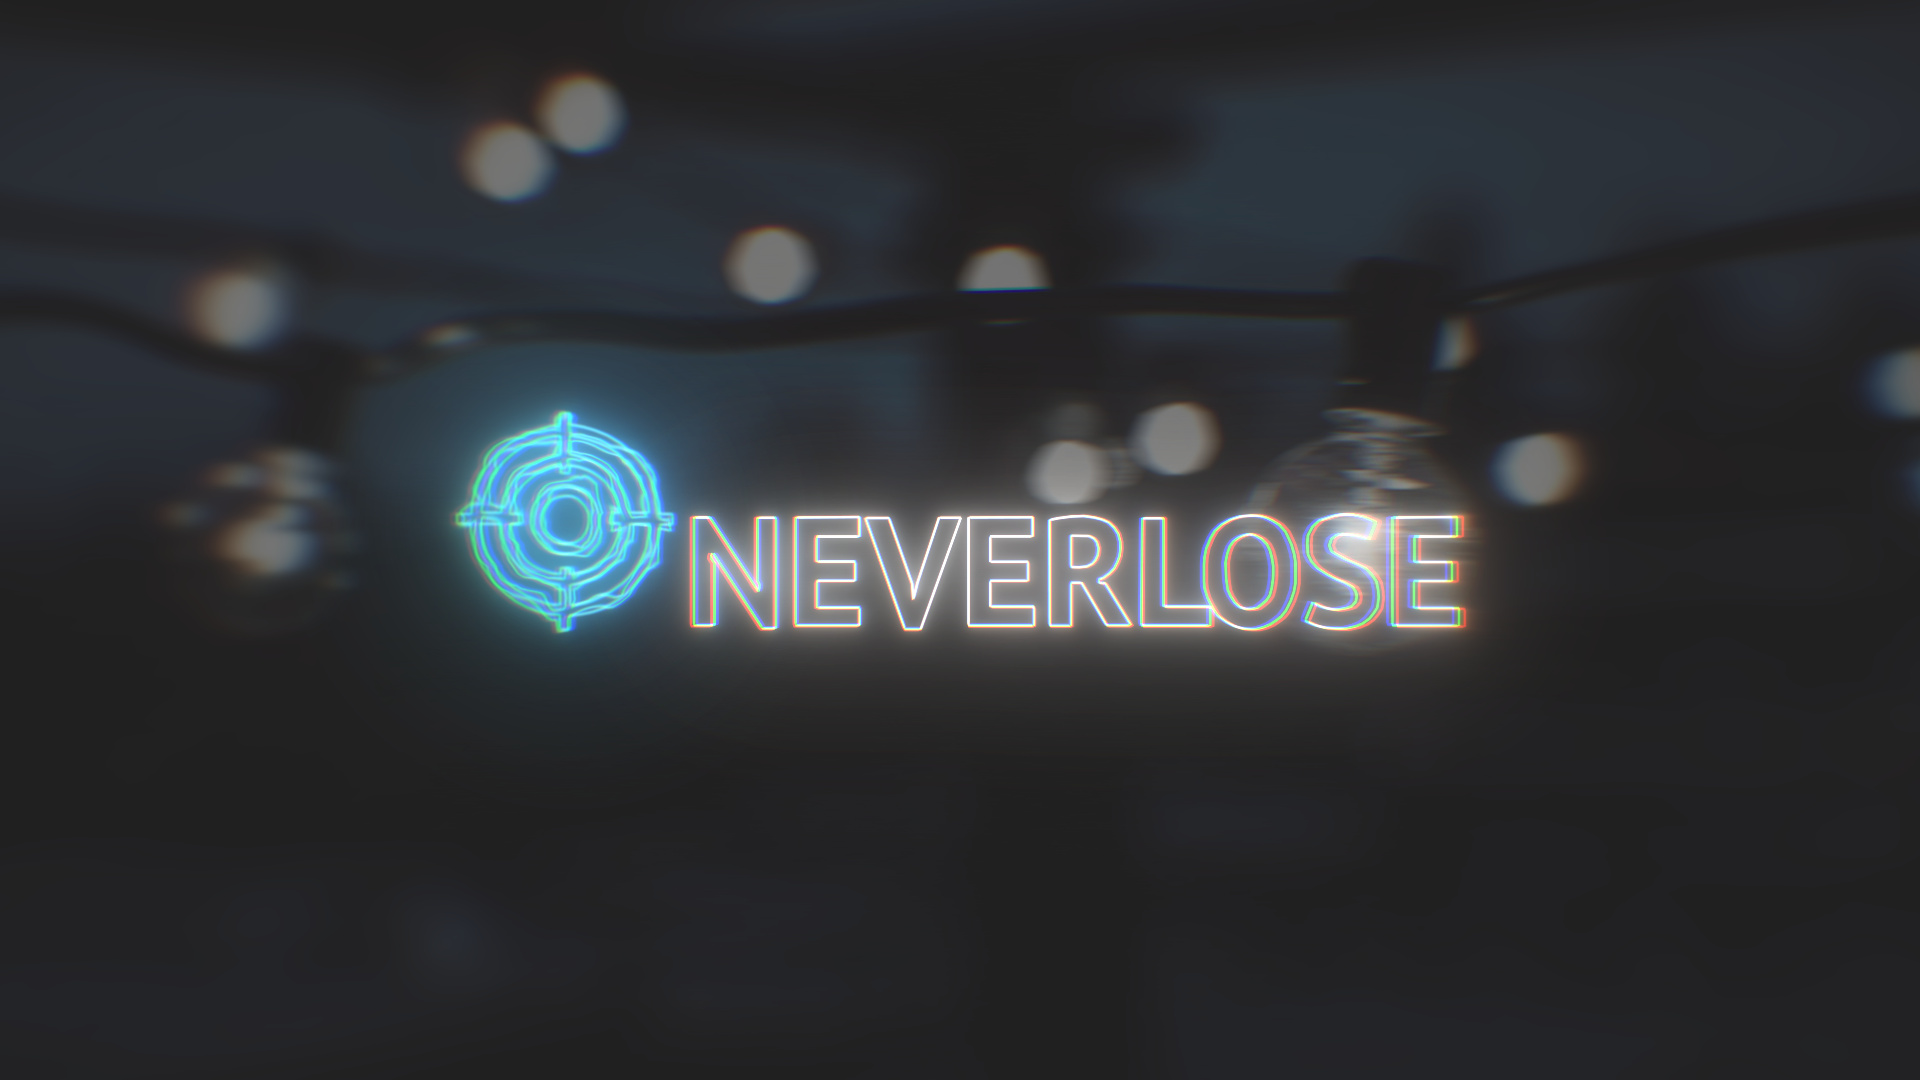 Https neverlose cc. Neverlose.cc v1. Neverlose.cc HVH Highlights. Neverlose фото. Neverlose логотип.